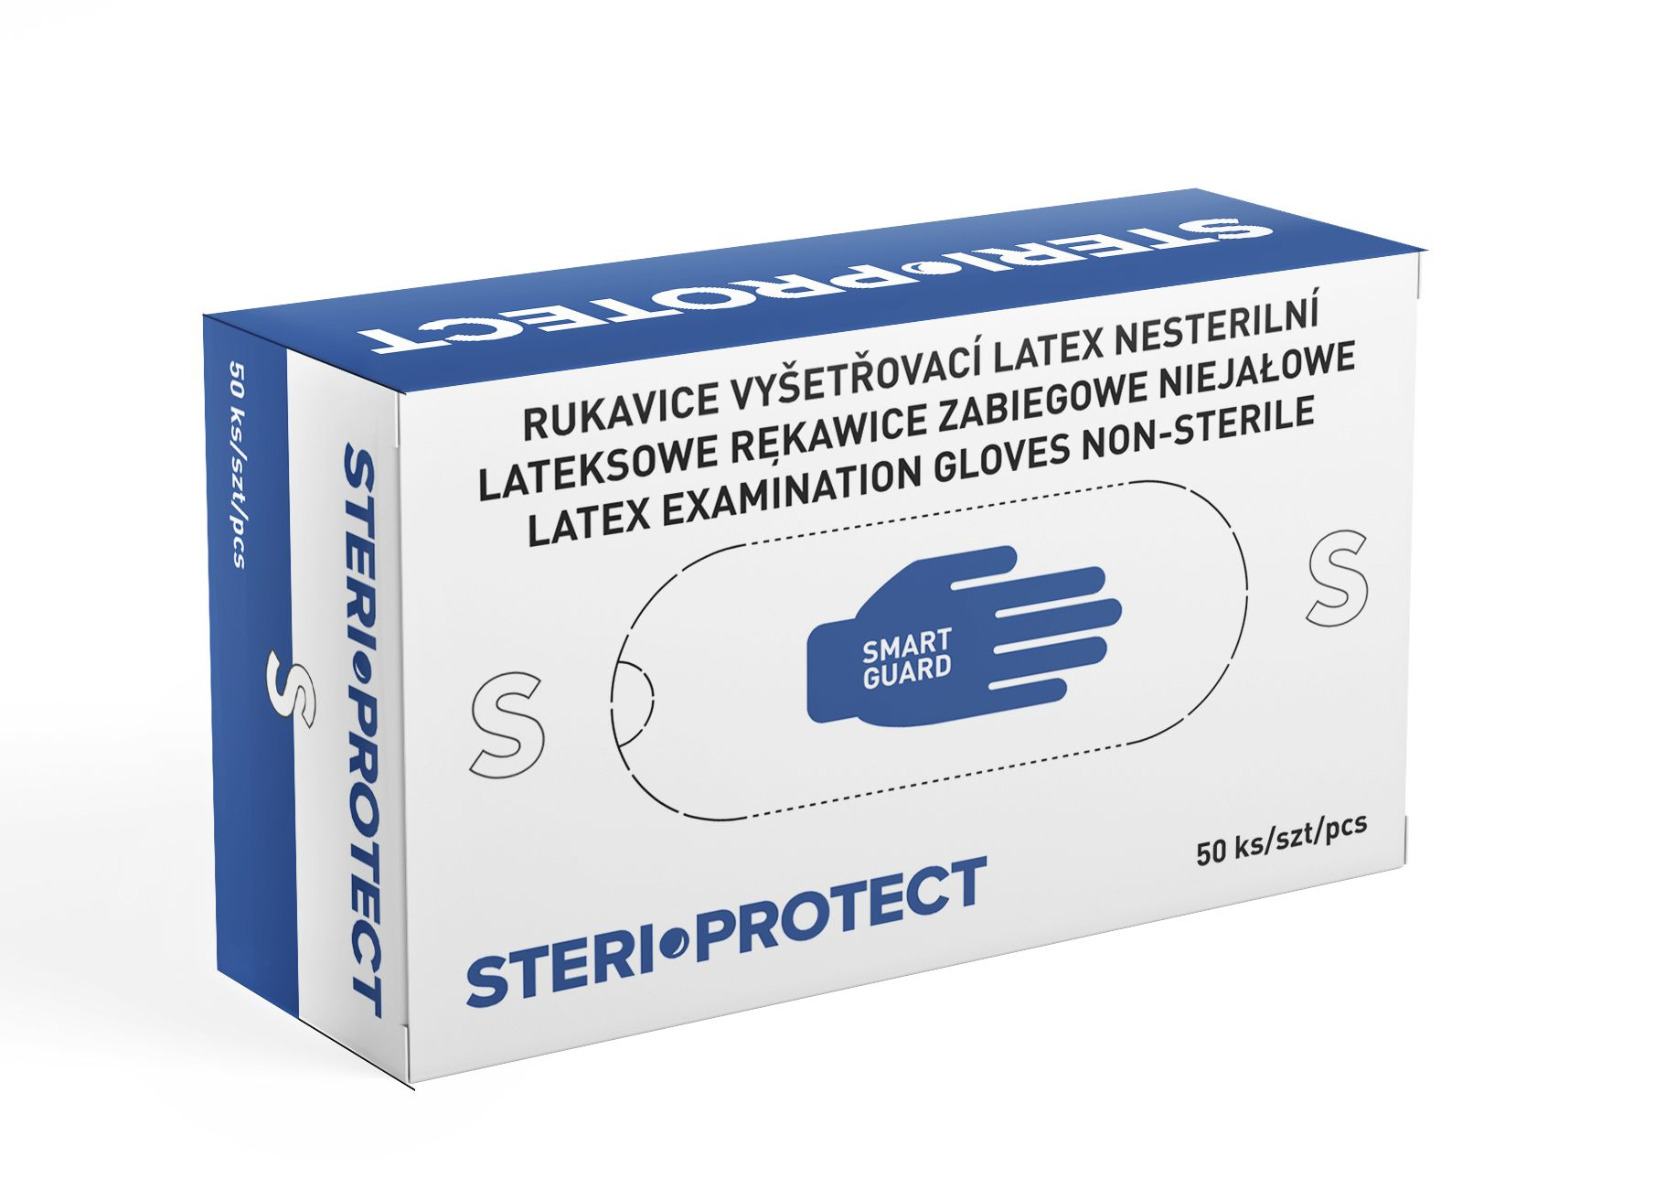 Steriwund Rukavice vyšetřovací latex nesterilní vel. S 50 ks Steriwund